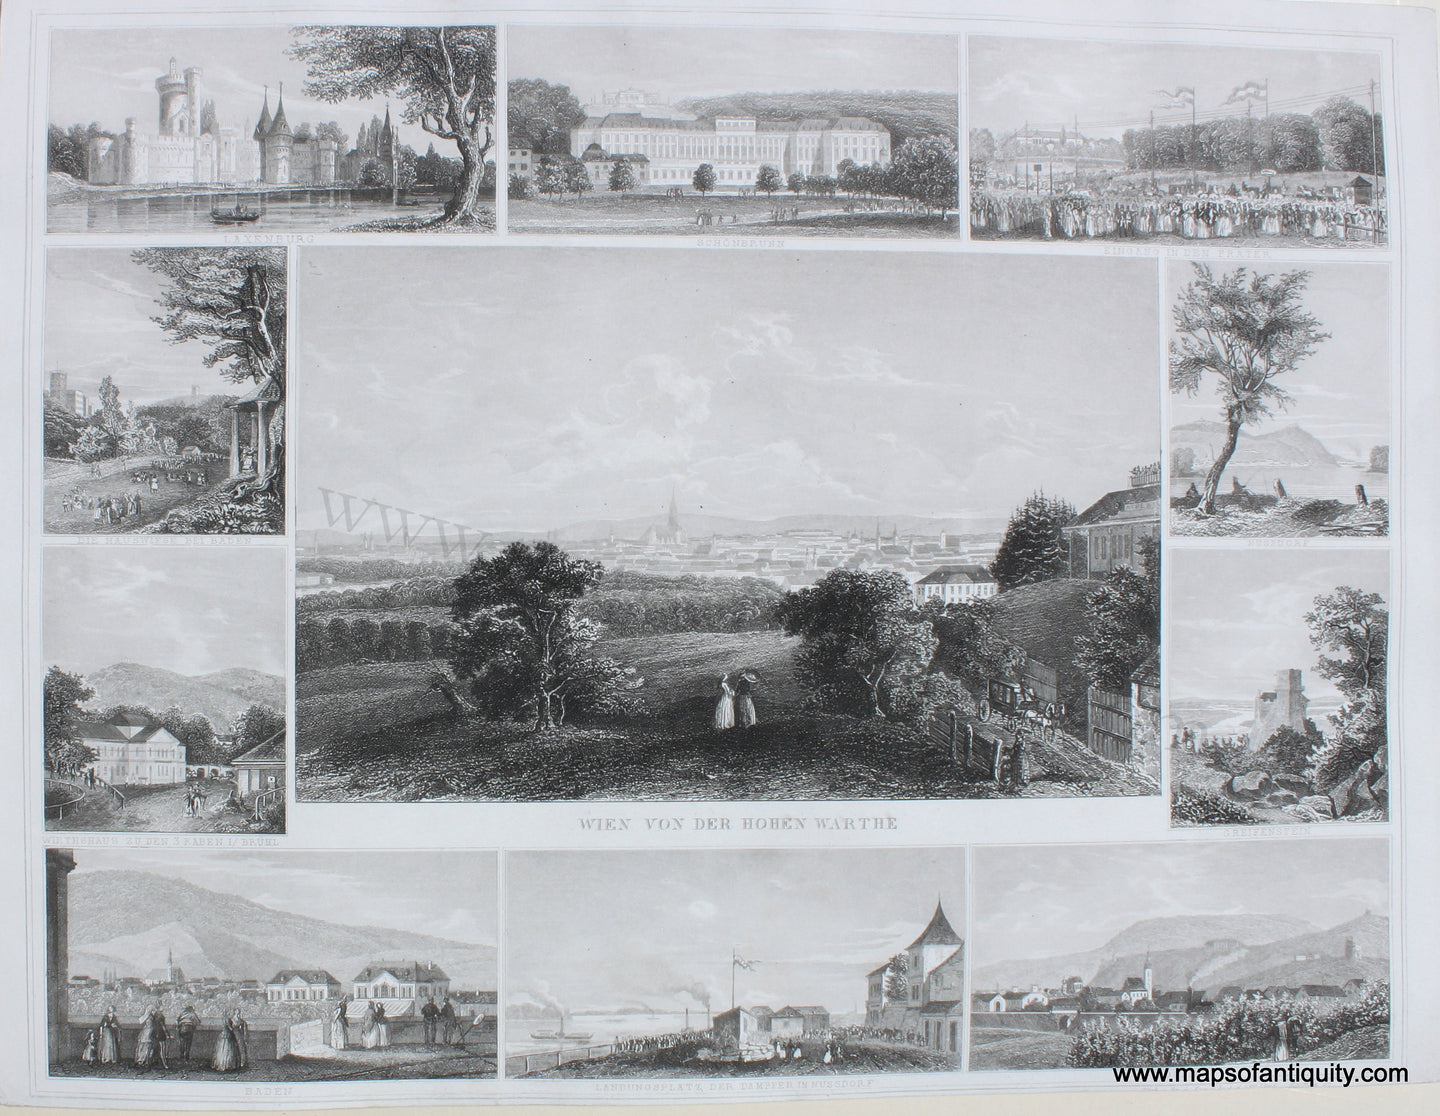 Antique-Engraving-Wien-von-der-Hohen-Warthe-Europe-Austria-1854-Triest-Maps-Of-Antiquity-1800s-19th-century